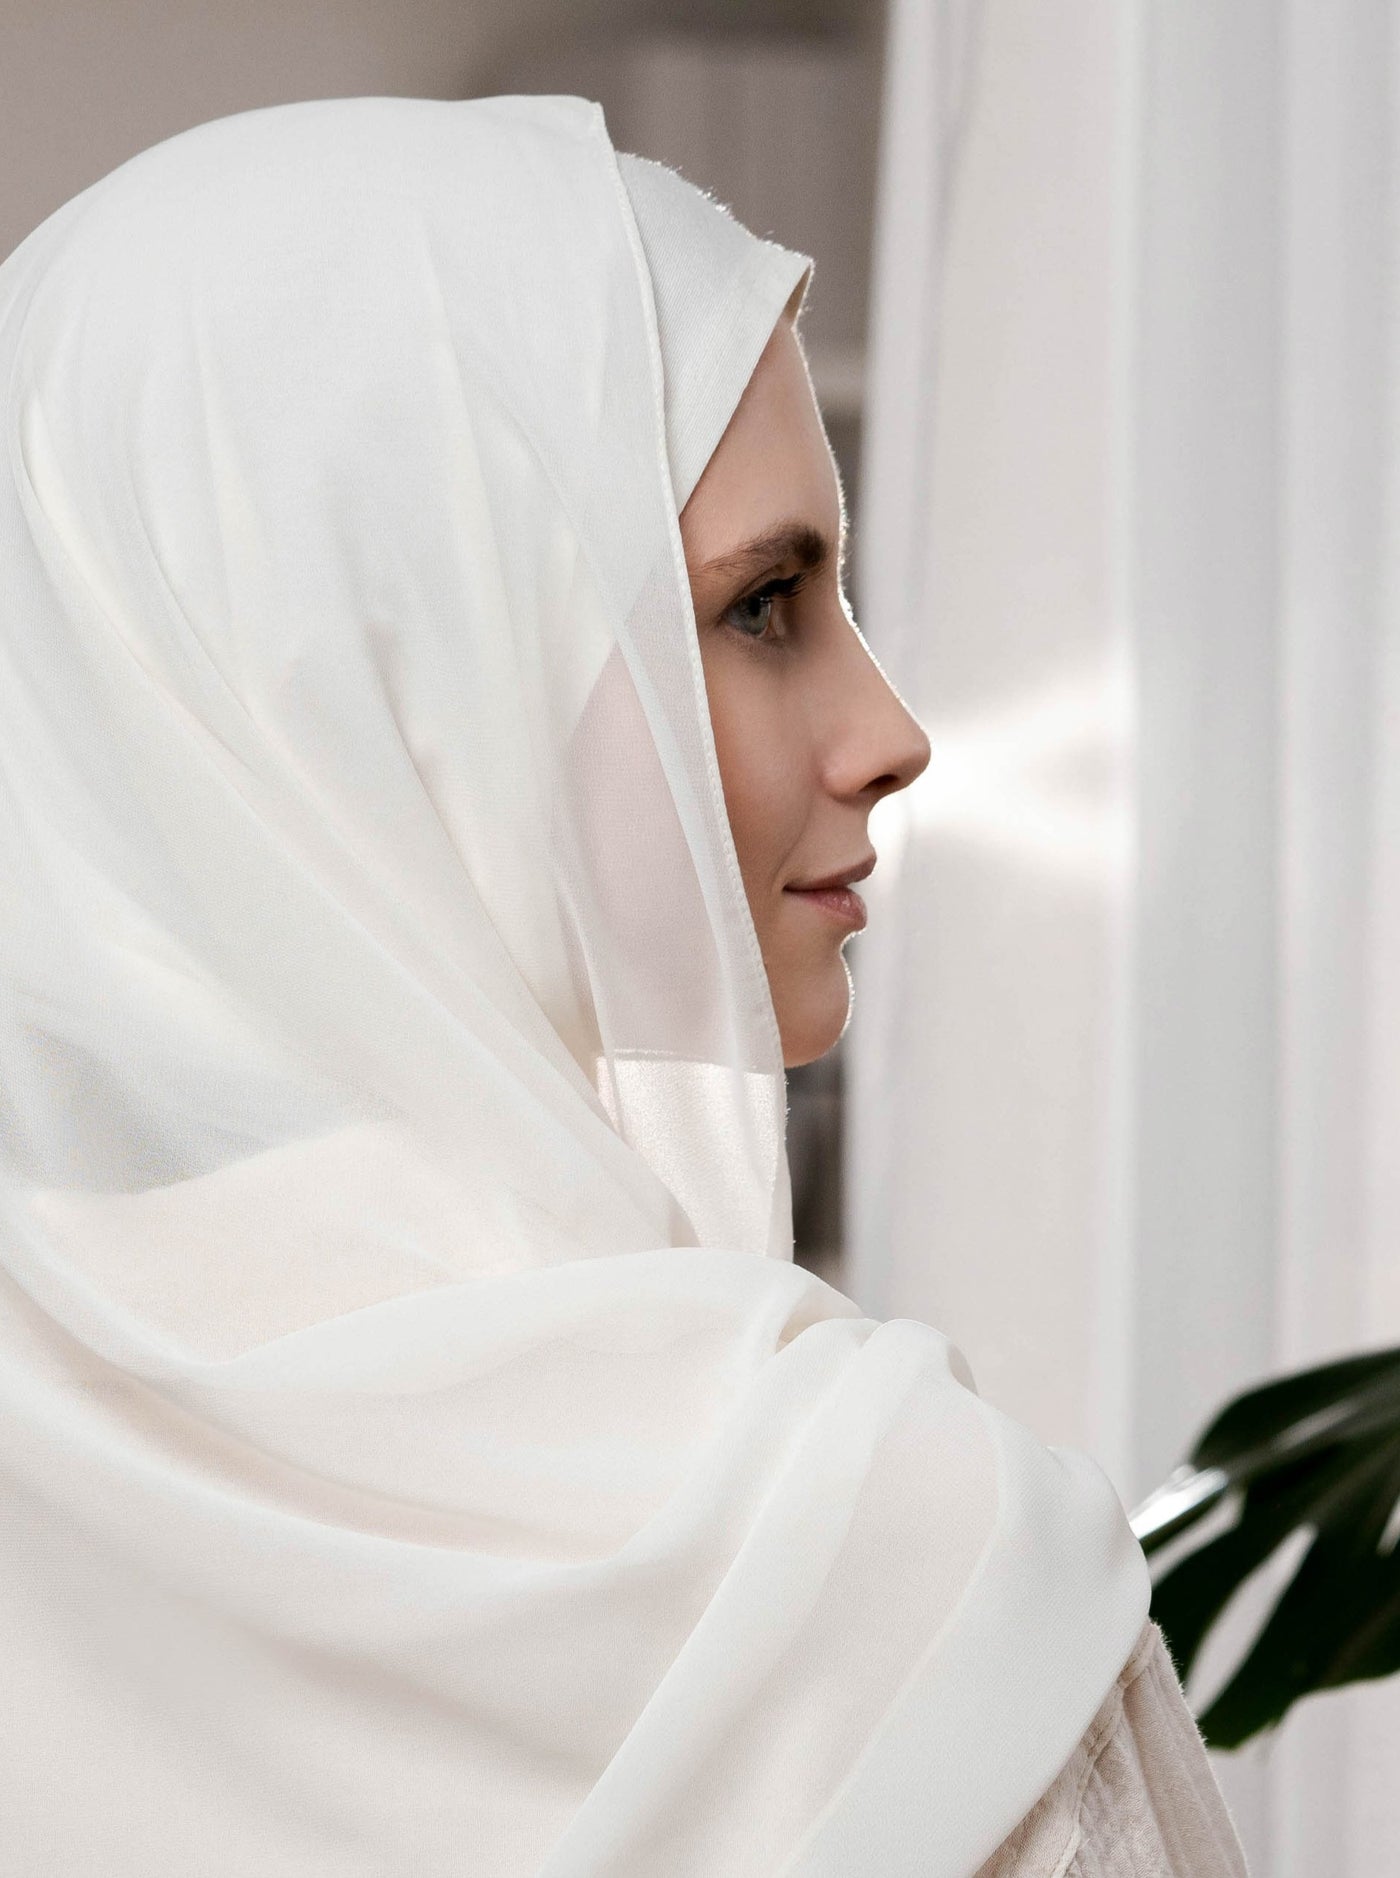 Hooded Chiffon Hijab - white